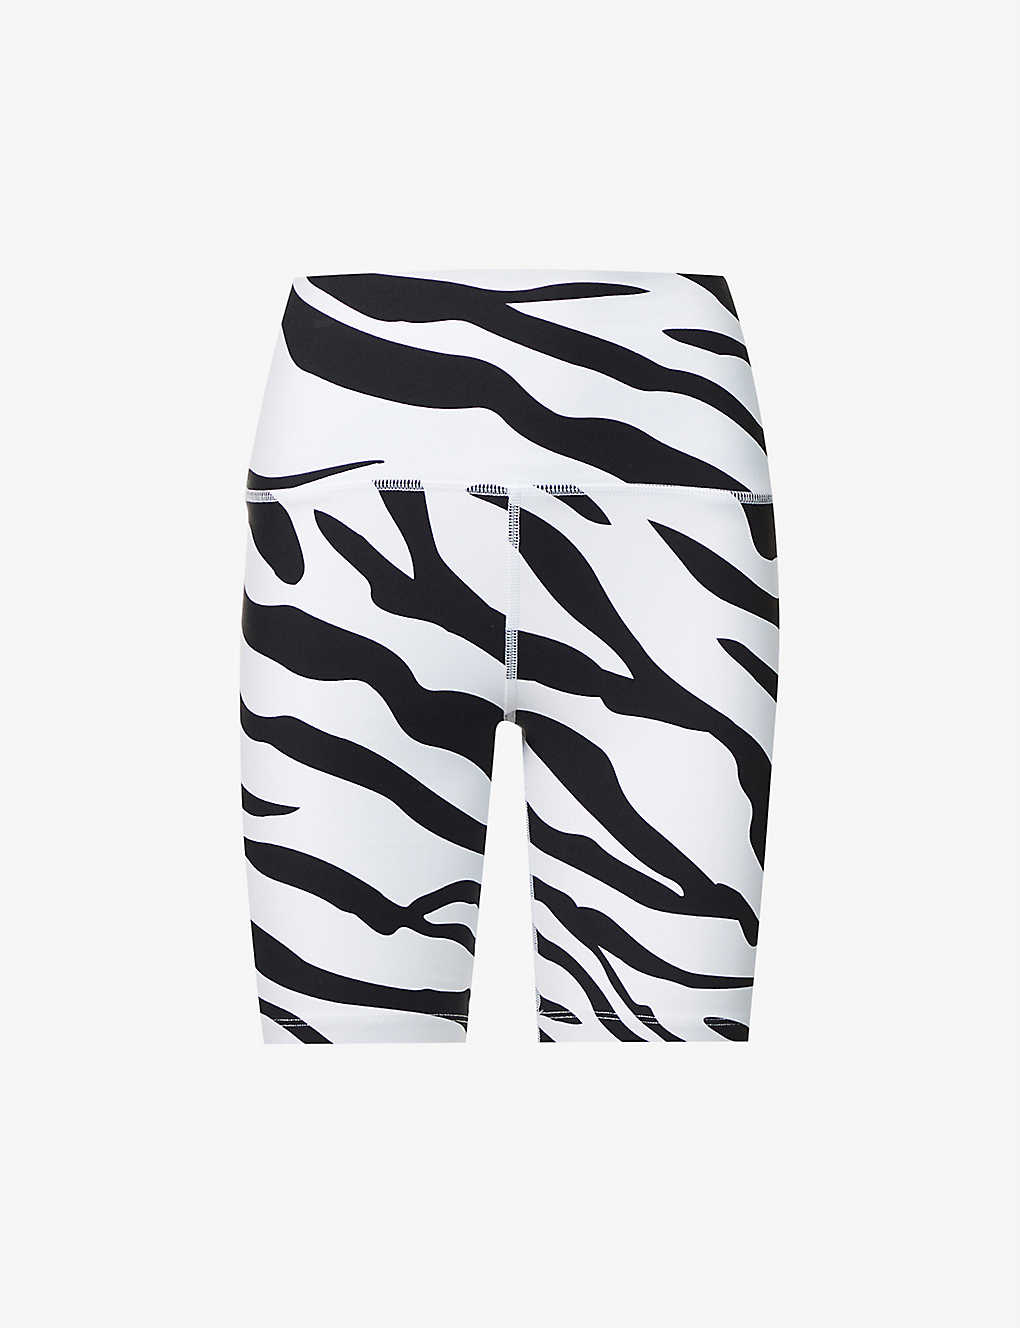 Voltage Excel zebra-print stretch-woven bike shorts Selfridges & Co Women Sport & Swimwear Sportswear Sports Shorts 